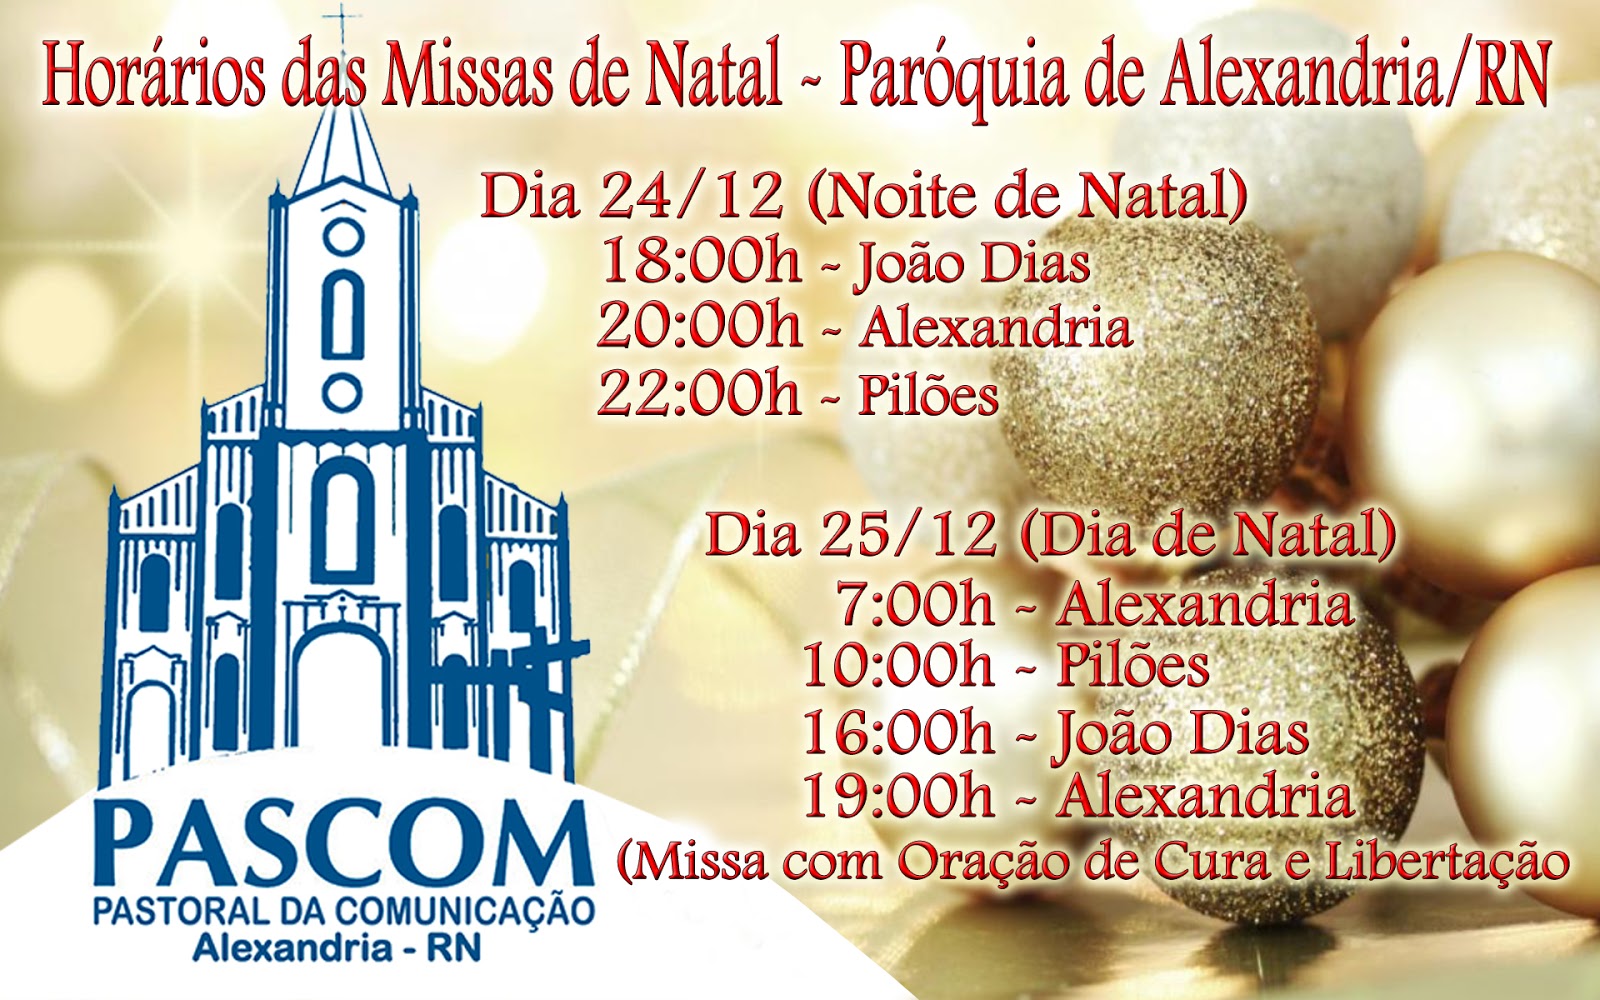 Paróquia de Nossa Sra da Conceição-Alexandria/RN: Horários das Missas de  Natal - Paróquia de Alexandria/RN